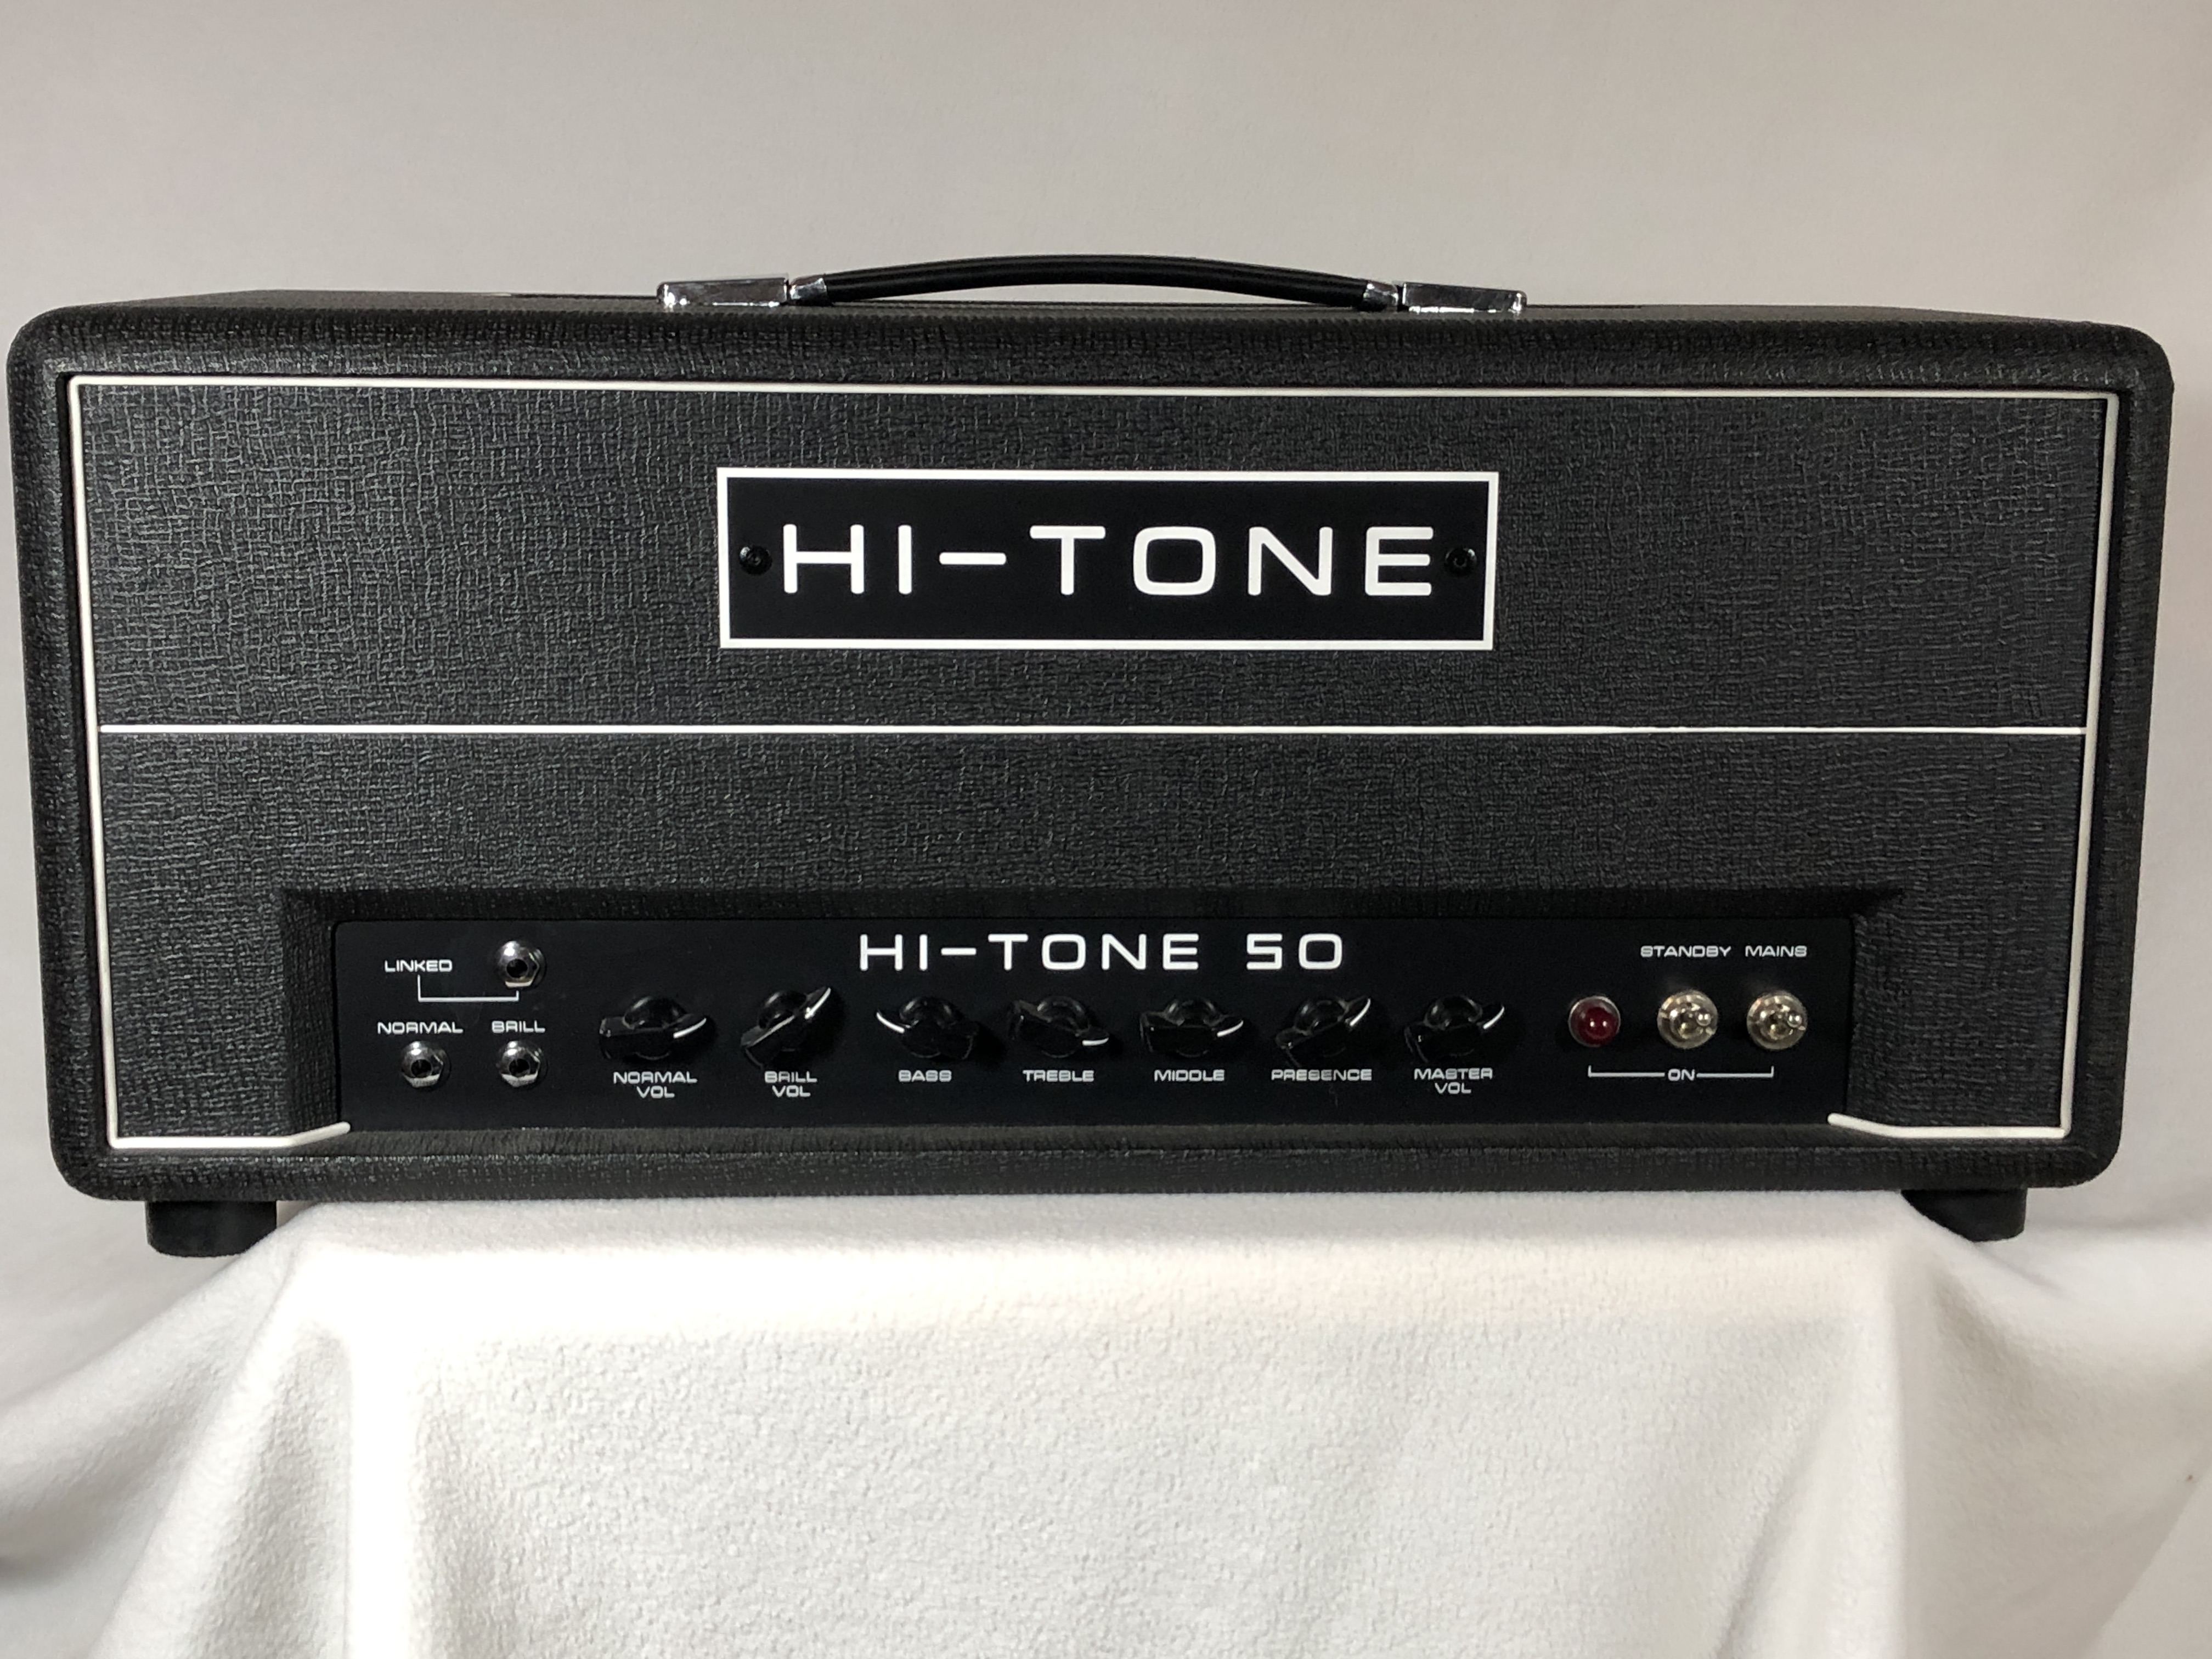 Hi-Tone DG50 – Near Mint Condition